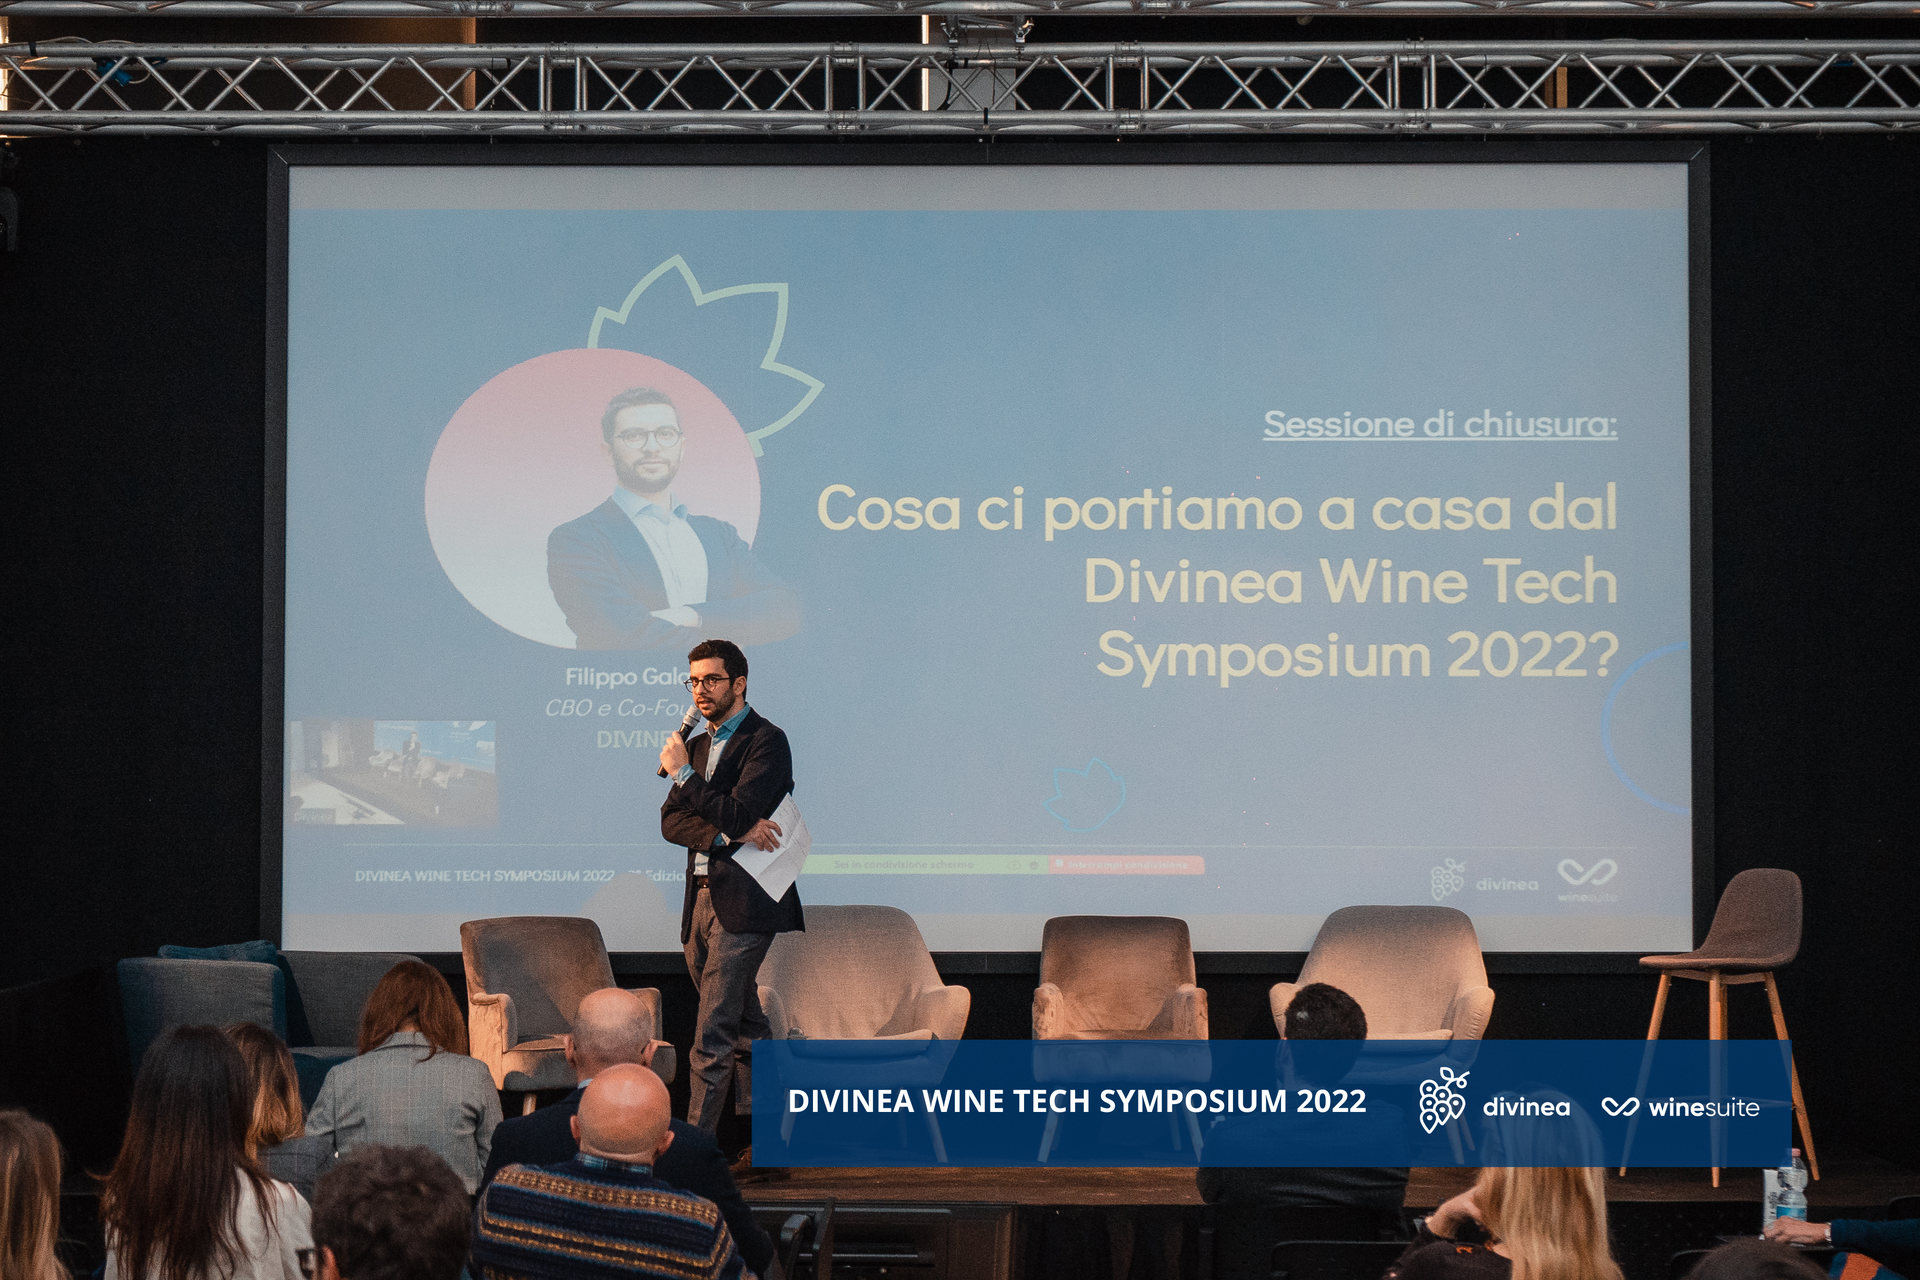 Divinea Wine Tech SYmposium 2022: ecosistema digitale WineSuite, foto da comunicato stampa